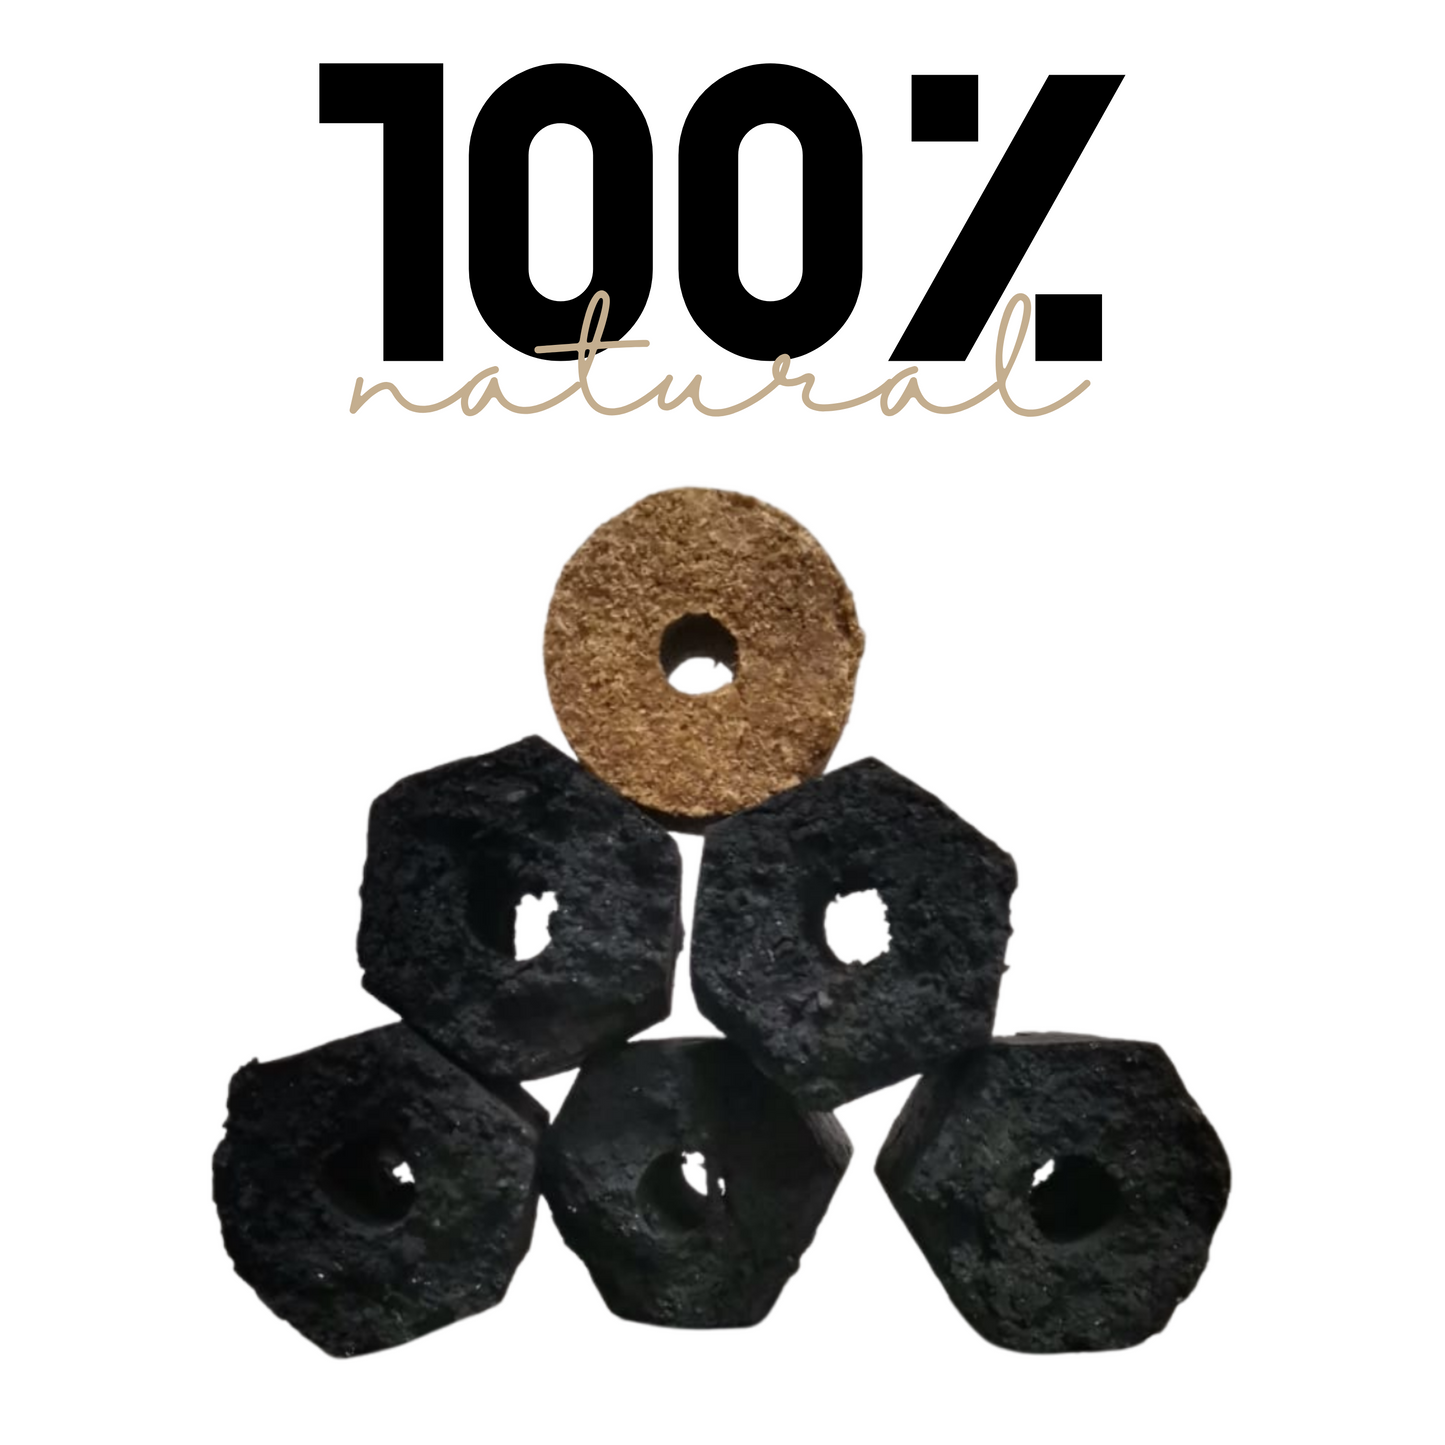 Briqueta Hexagonal | Carbón de Encino | 100% natural | 3.5 kg | Mexpofood